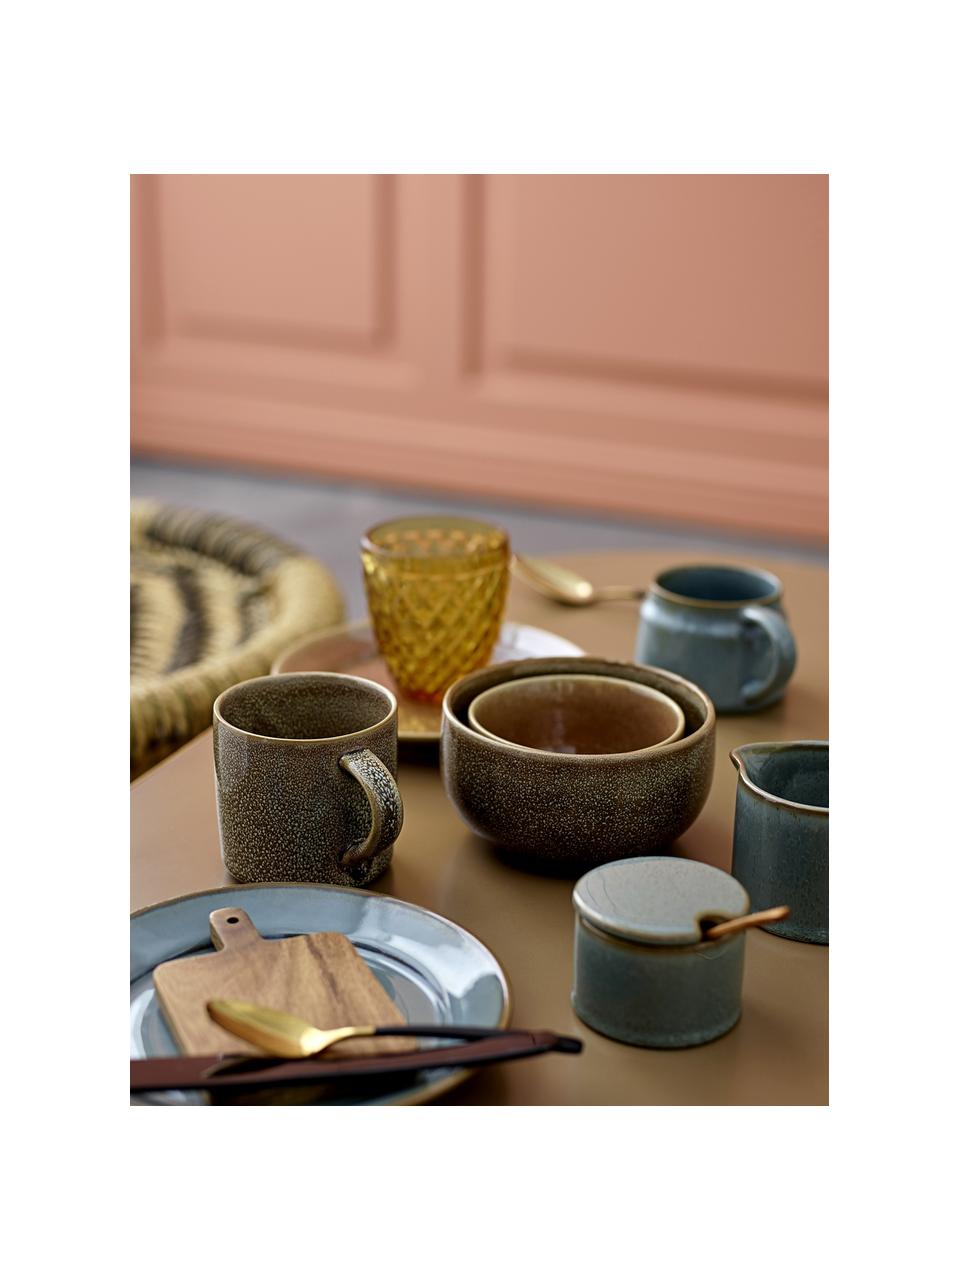 Keramische suikerpot Pixie met houten lepel, Pot: keramiek, Lepel: acaciahout, Groentinten, Ø 8 x H 6 cm